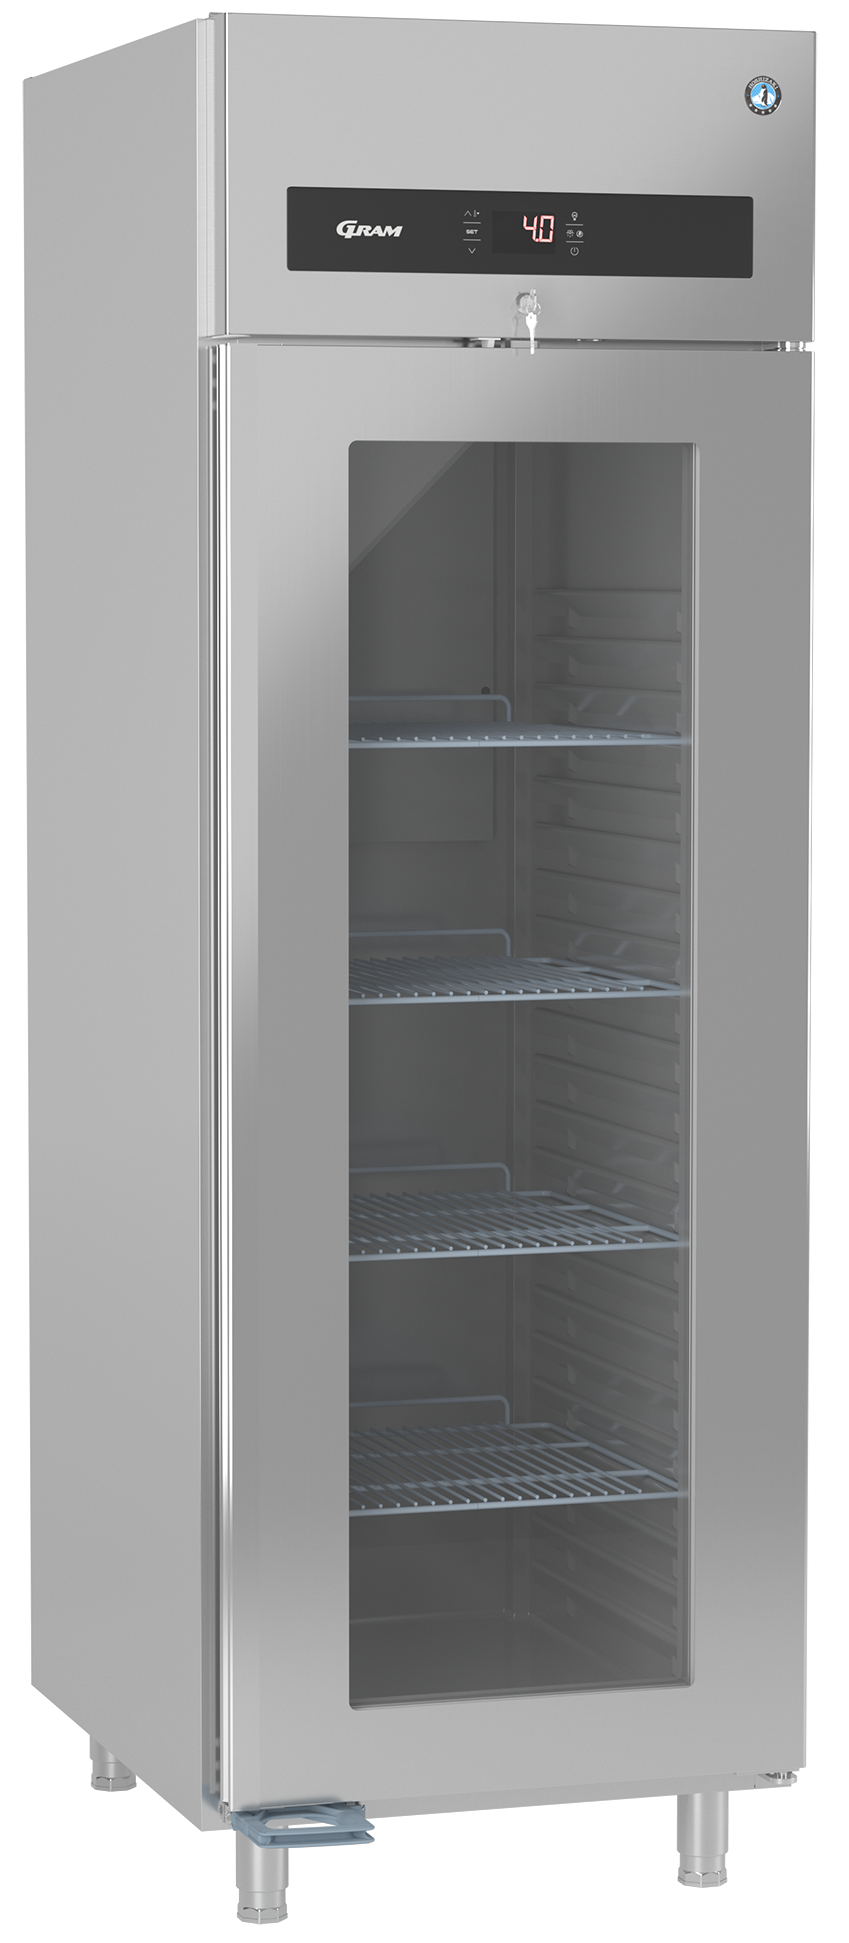 Hoshizaki Premier KG 70 L professionele koelkast met glasdeur